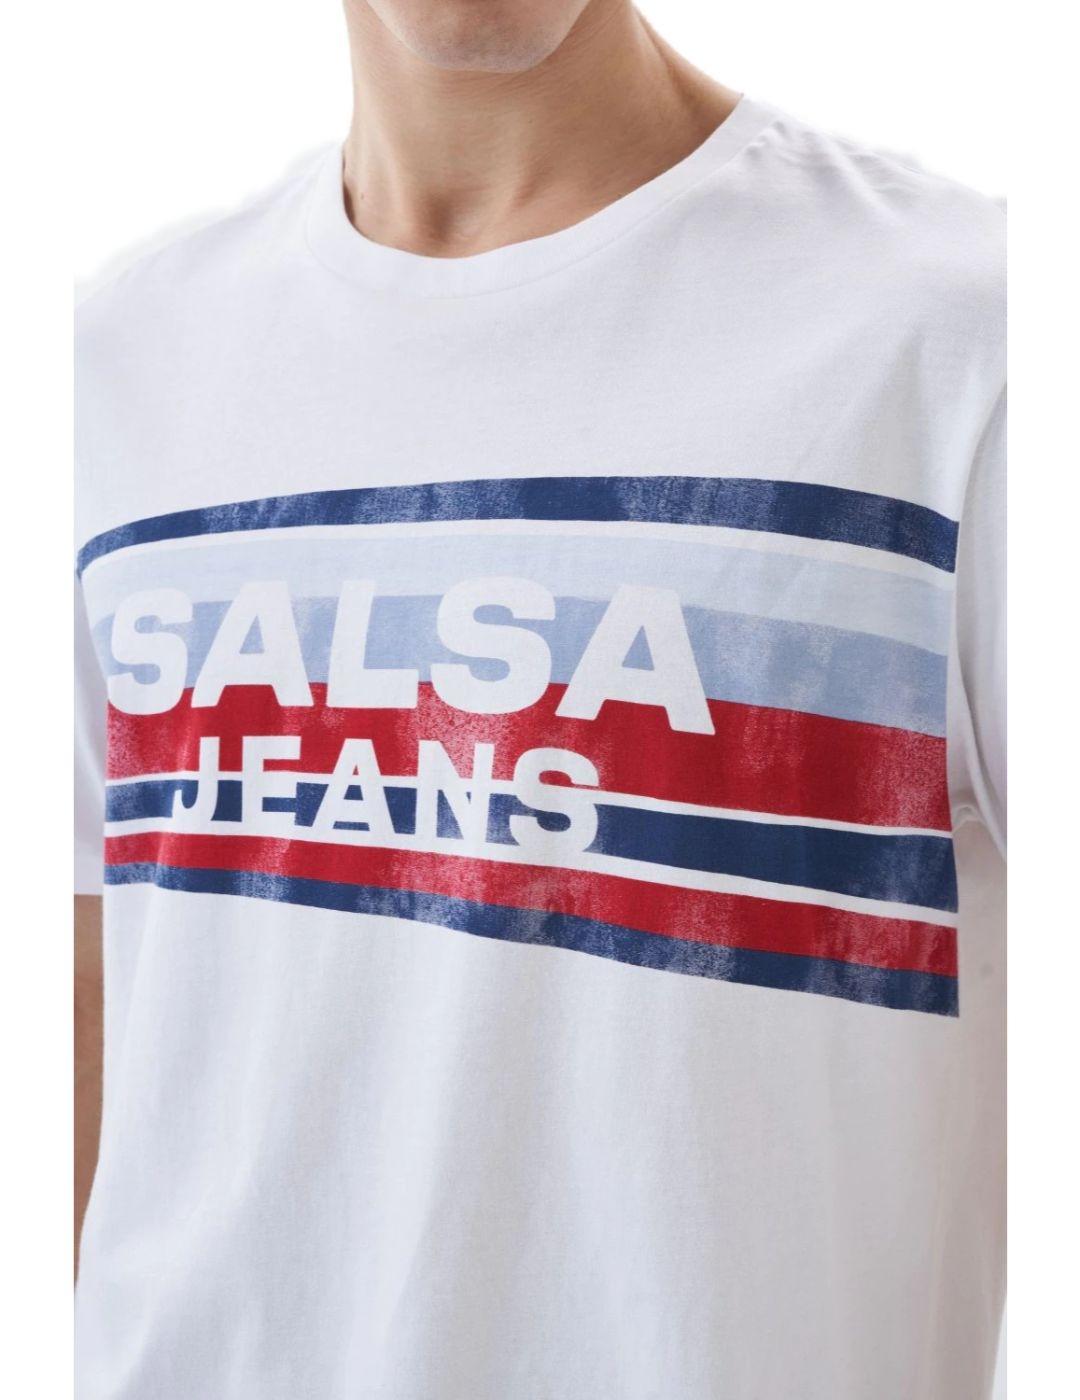 Camiseta Salsa branding blanca rayas de hombre -a